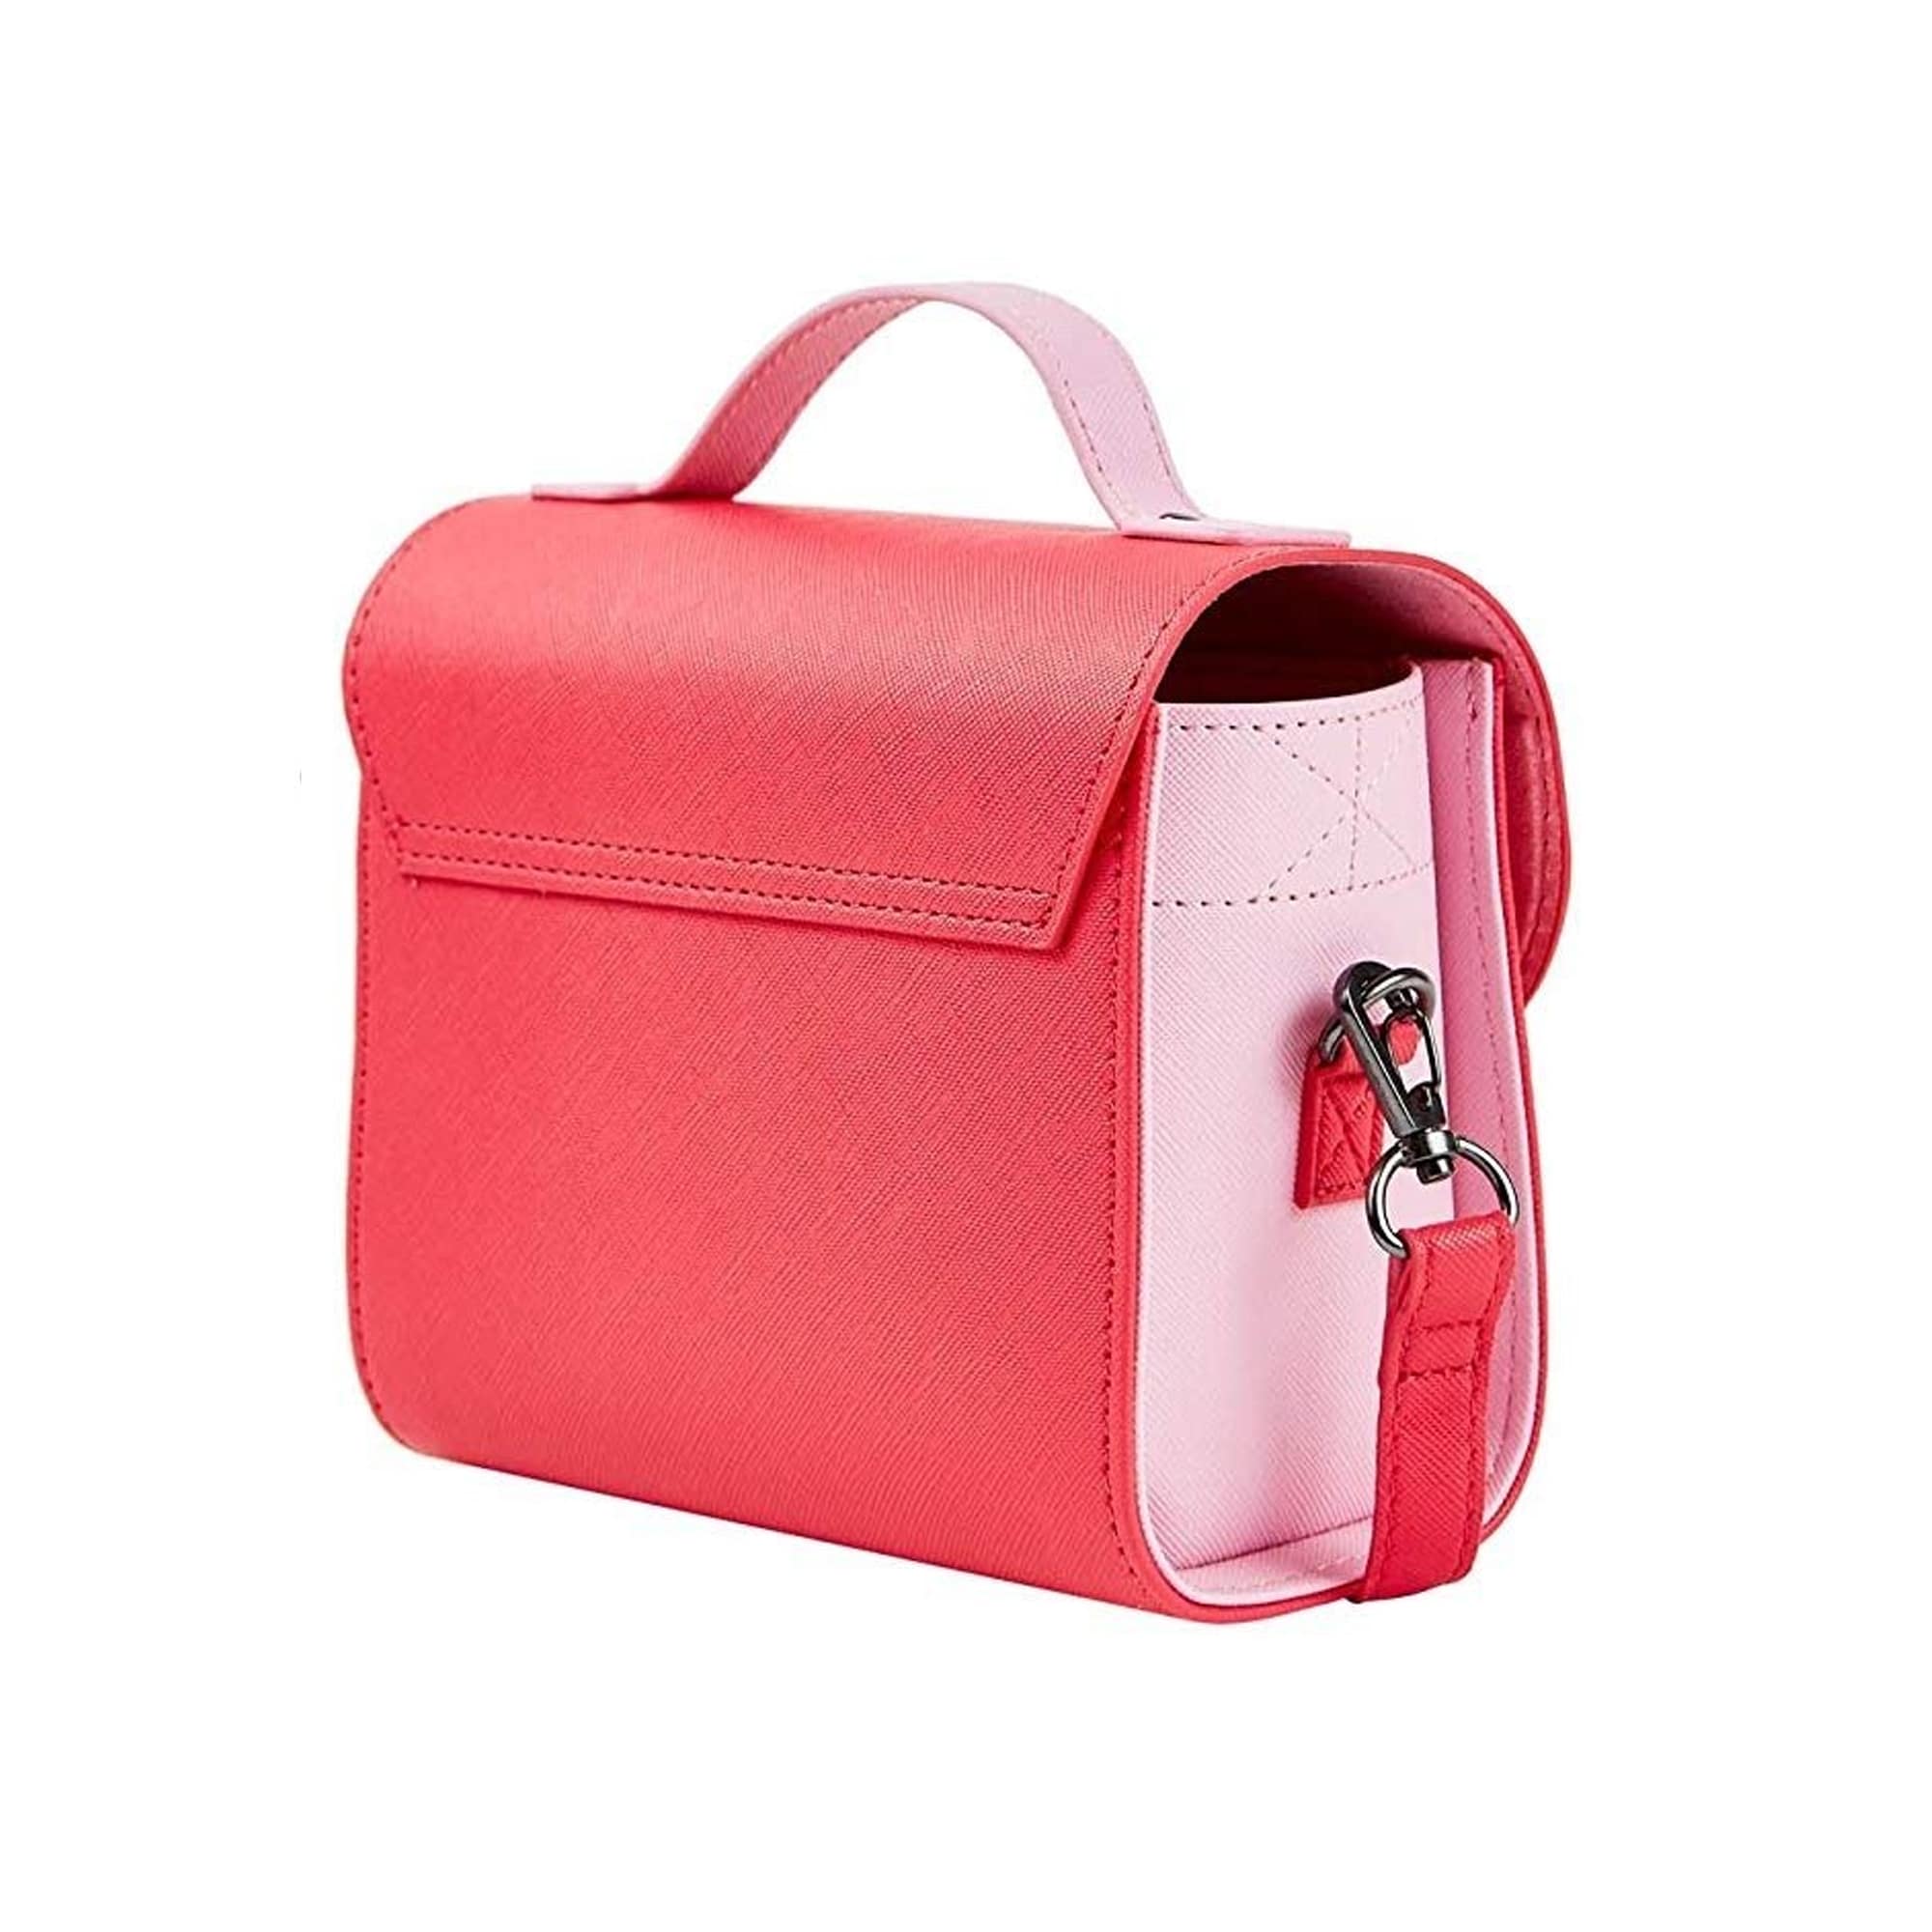 Fujifilm Instax Mini Väska Flamingo Pink Med Handtag